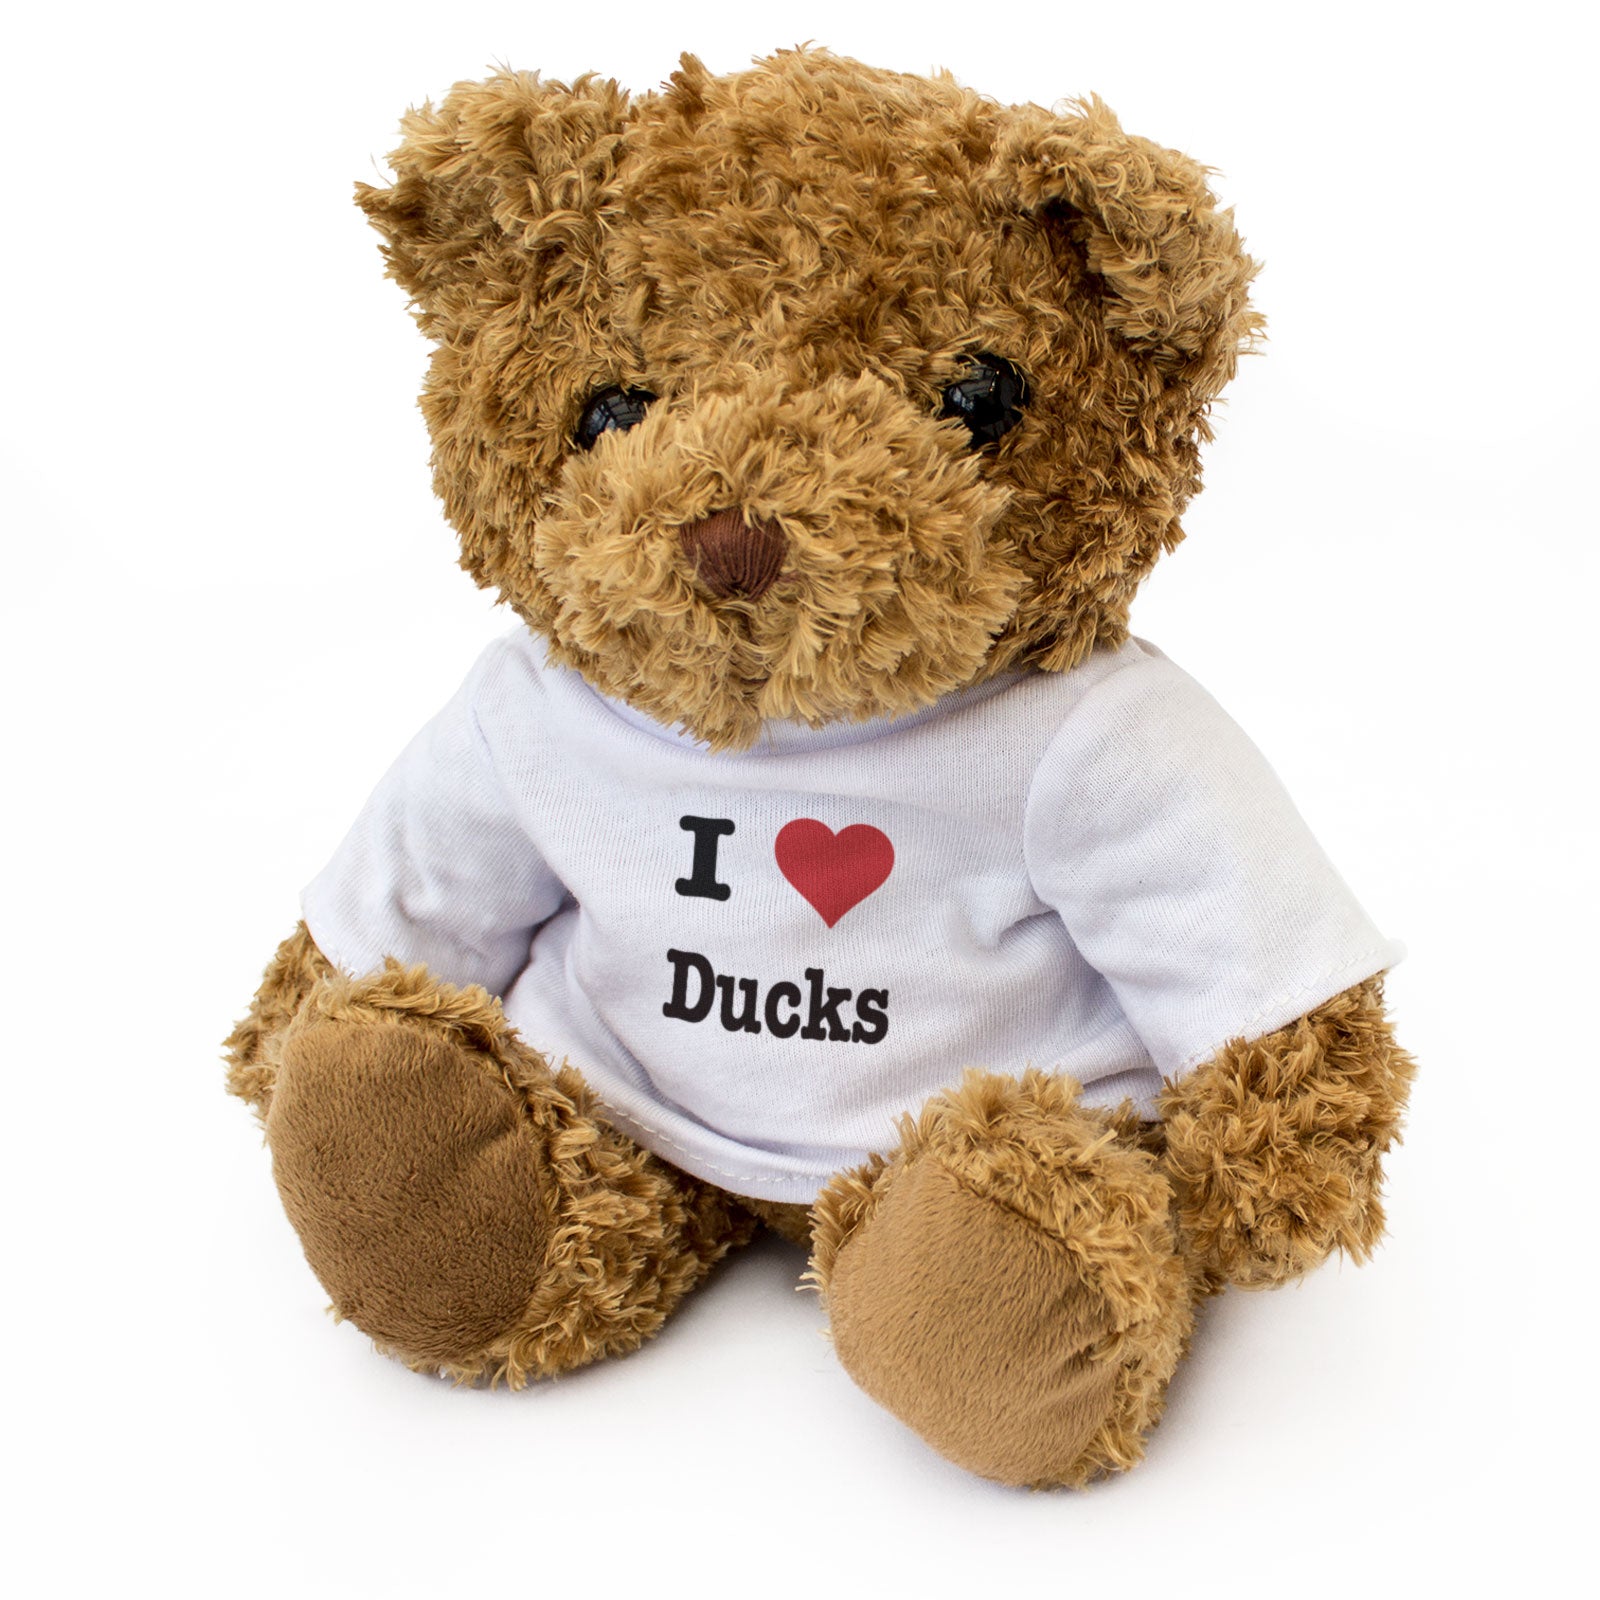 I Heart Ducks Teddy Bear